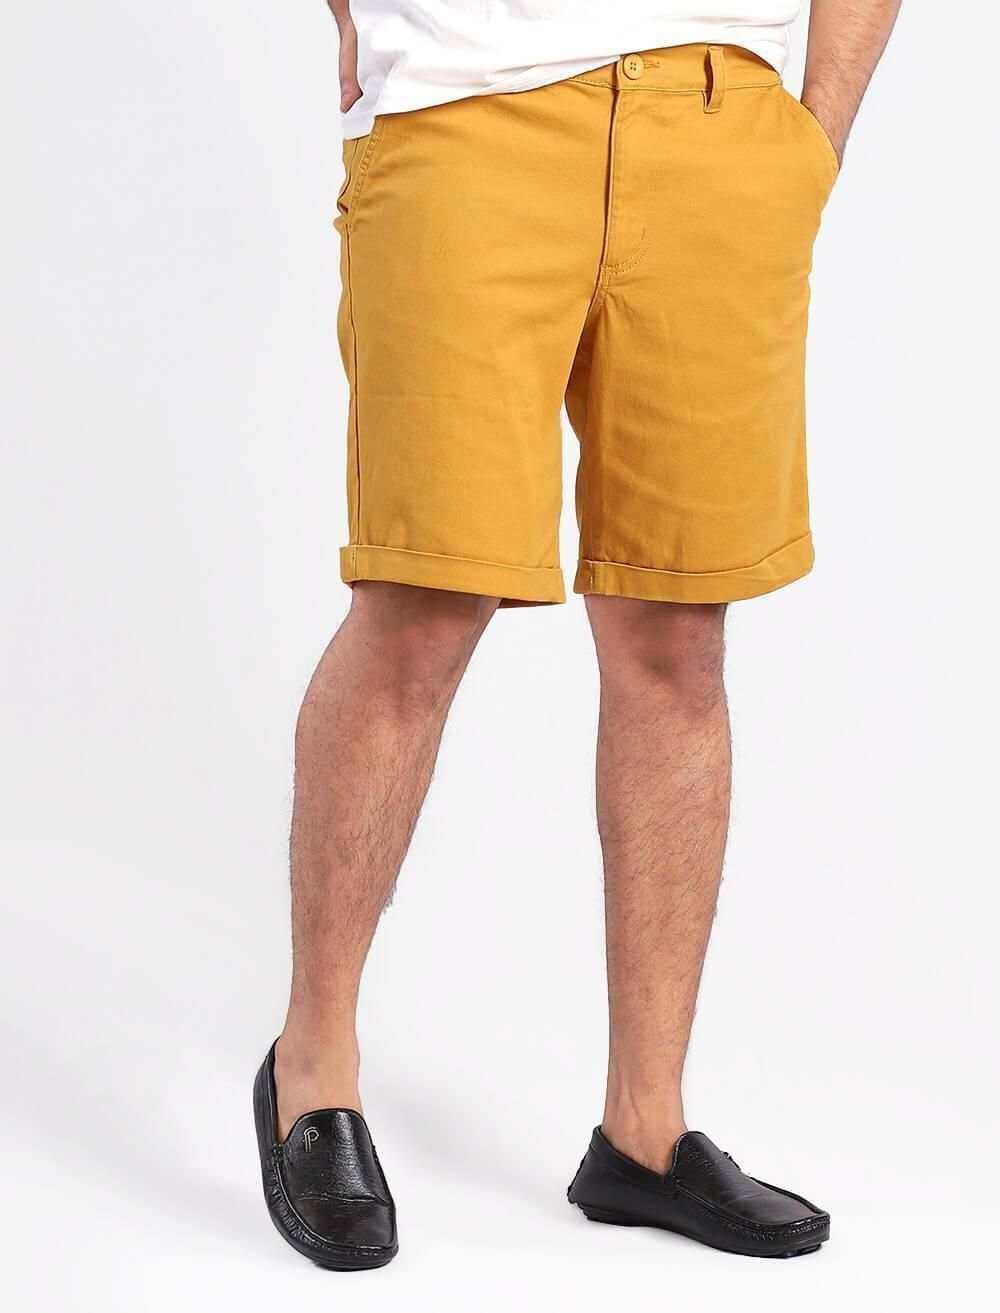 Men's Short Pant - Blucheez